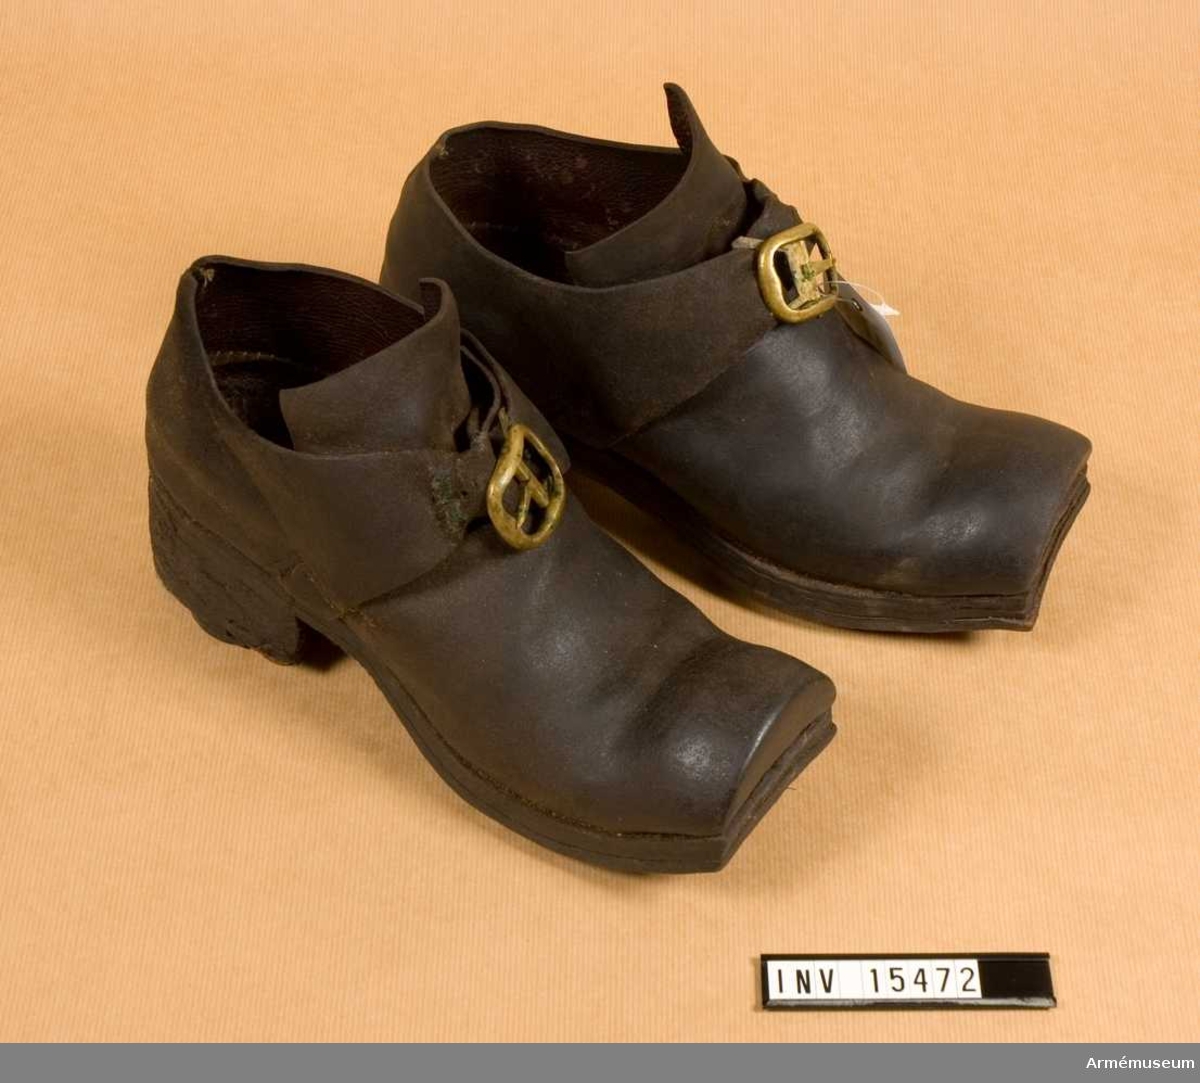 Grupp C I.
Ett par skor av brunt läder med mässingsspännen.